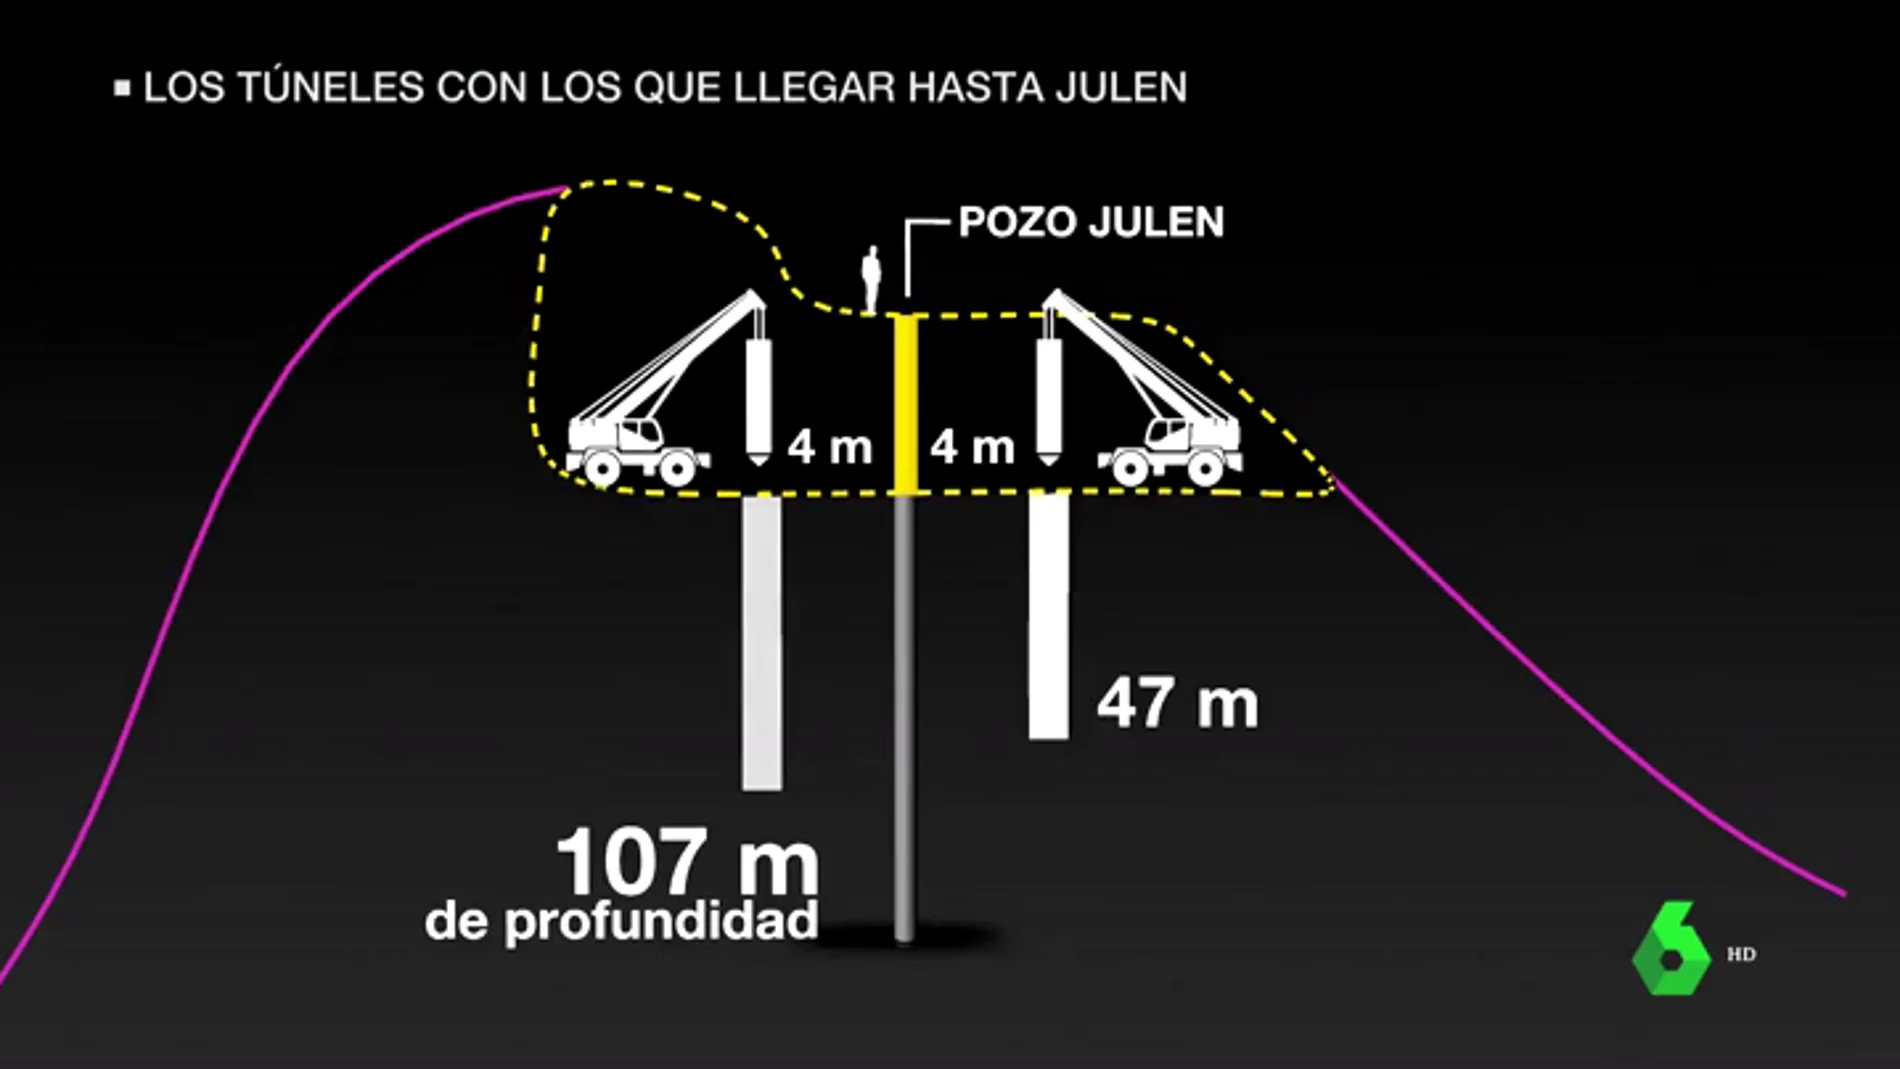 Rescate de Julen: este viernes arranca la perforación del túnel vertical para acceder al pozo de Totalán